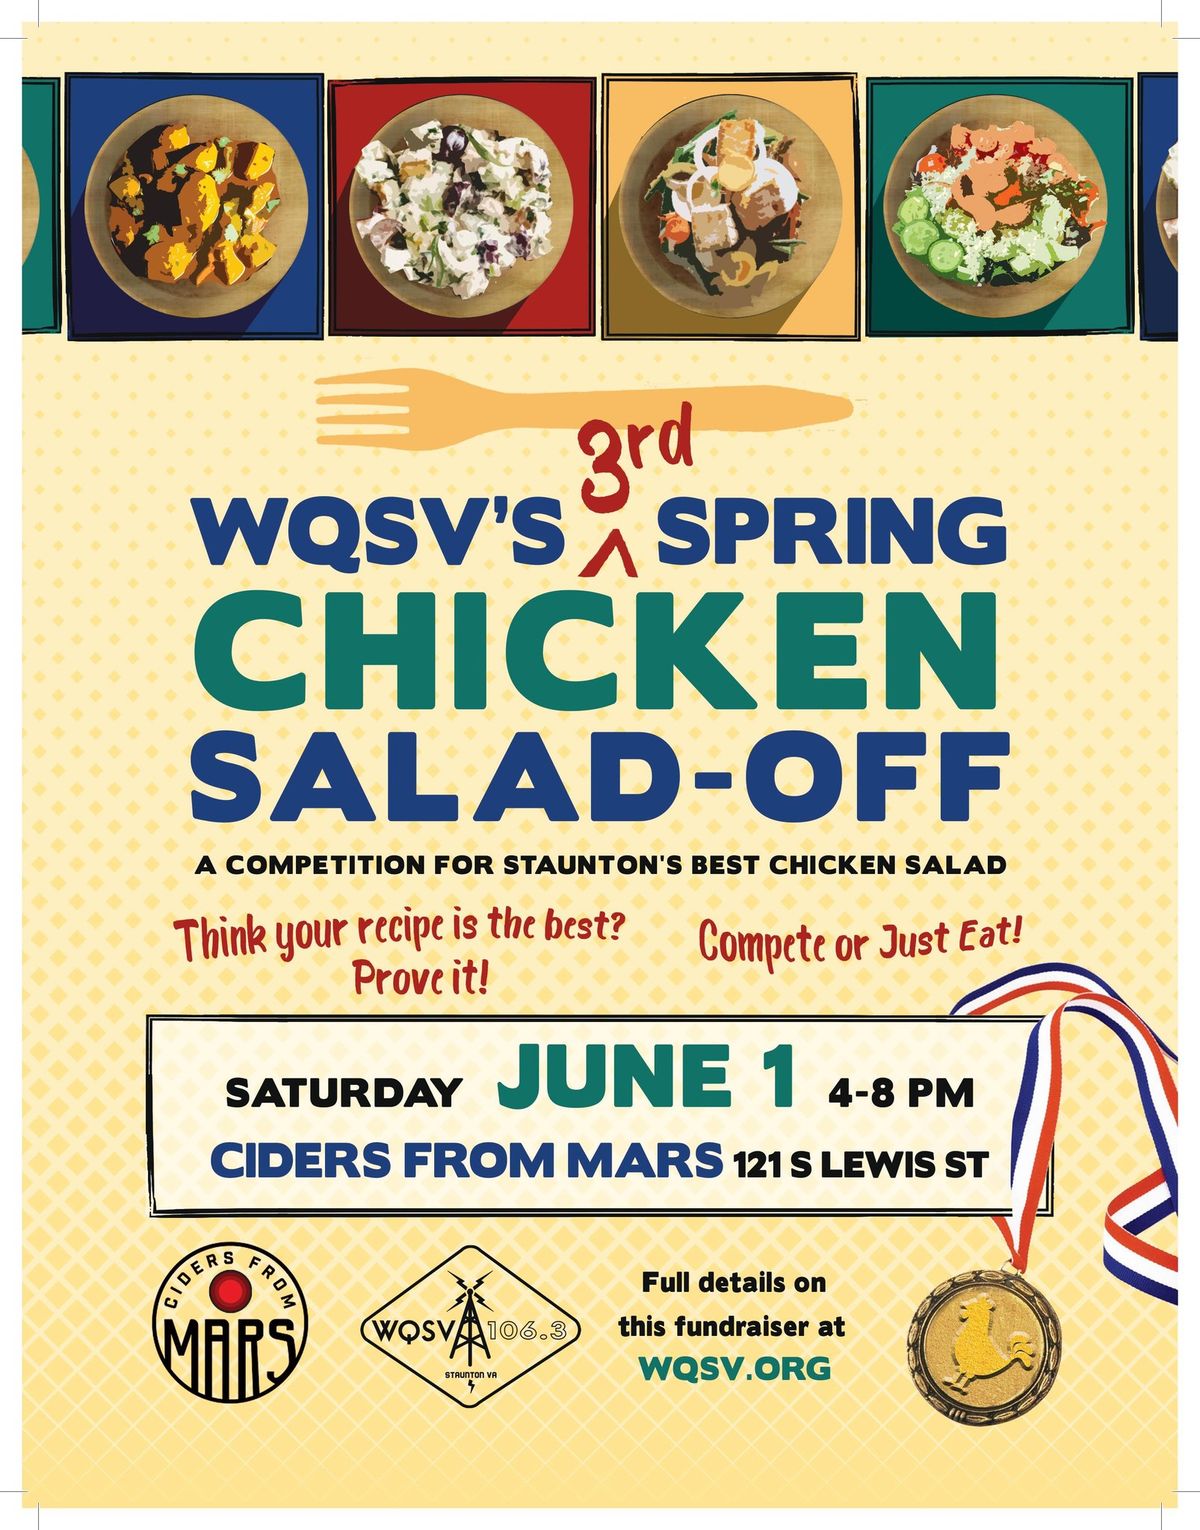 WQSV's Third Annual Chicken Salad-Off 